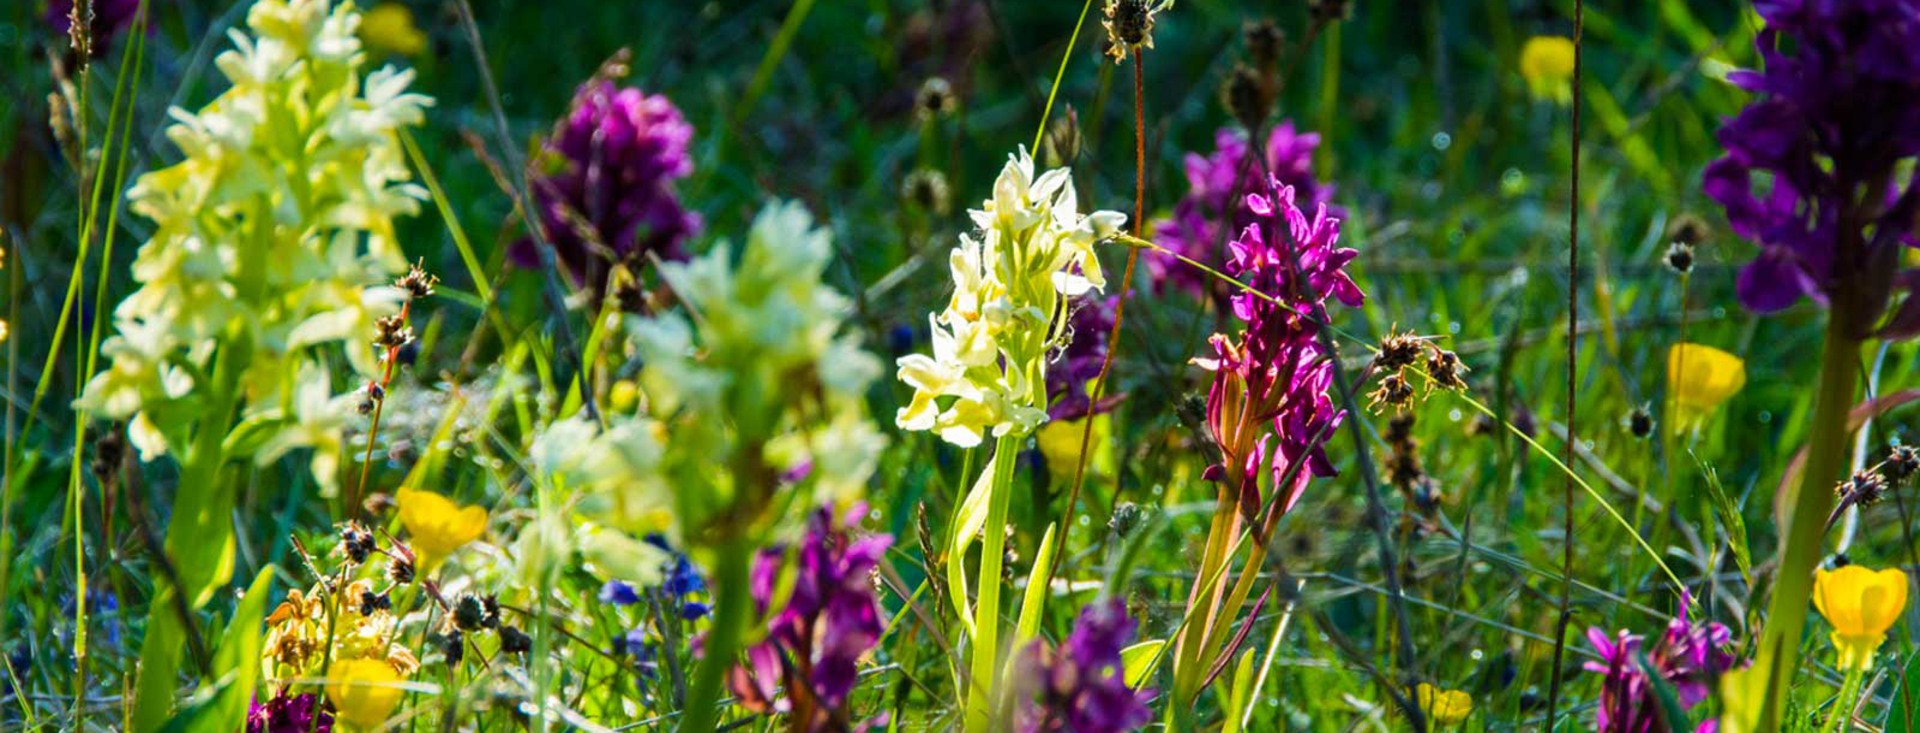 En stor andel gula, lila och blå orkideer är fotograferade på en sommaräng.